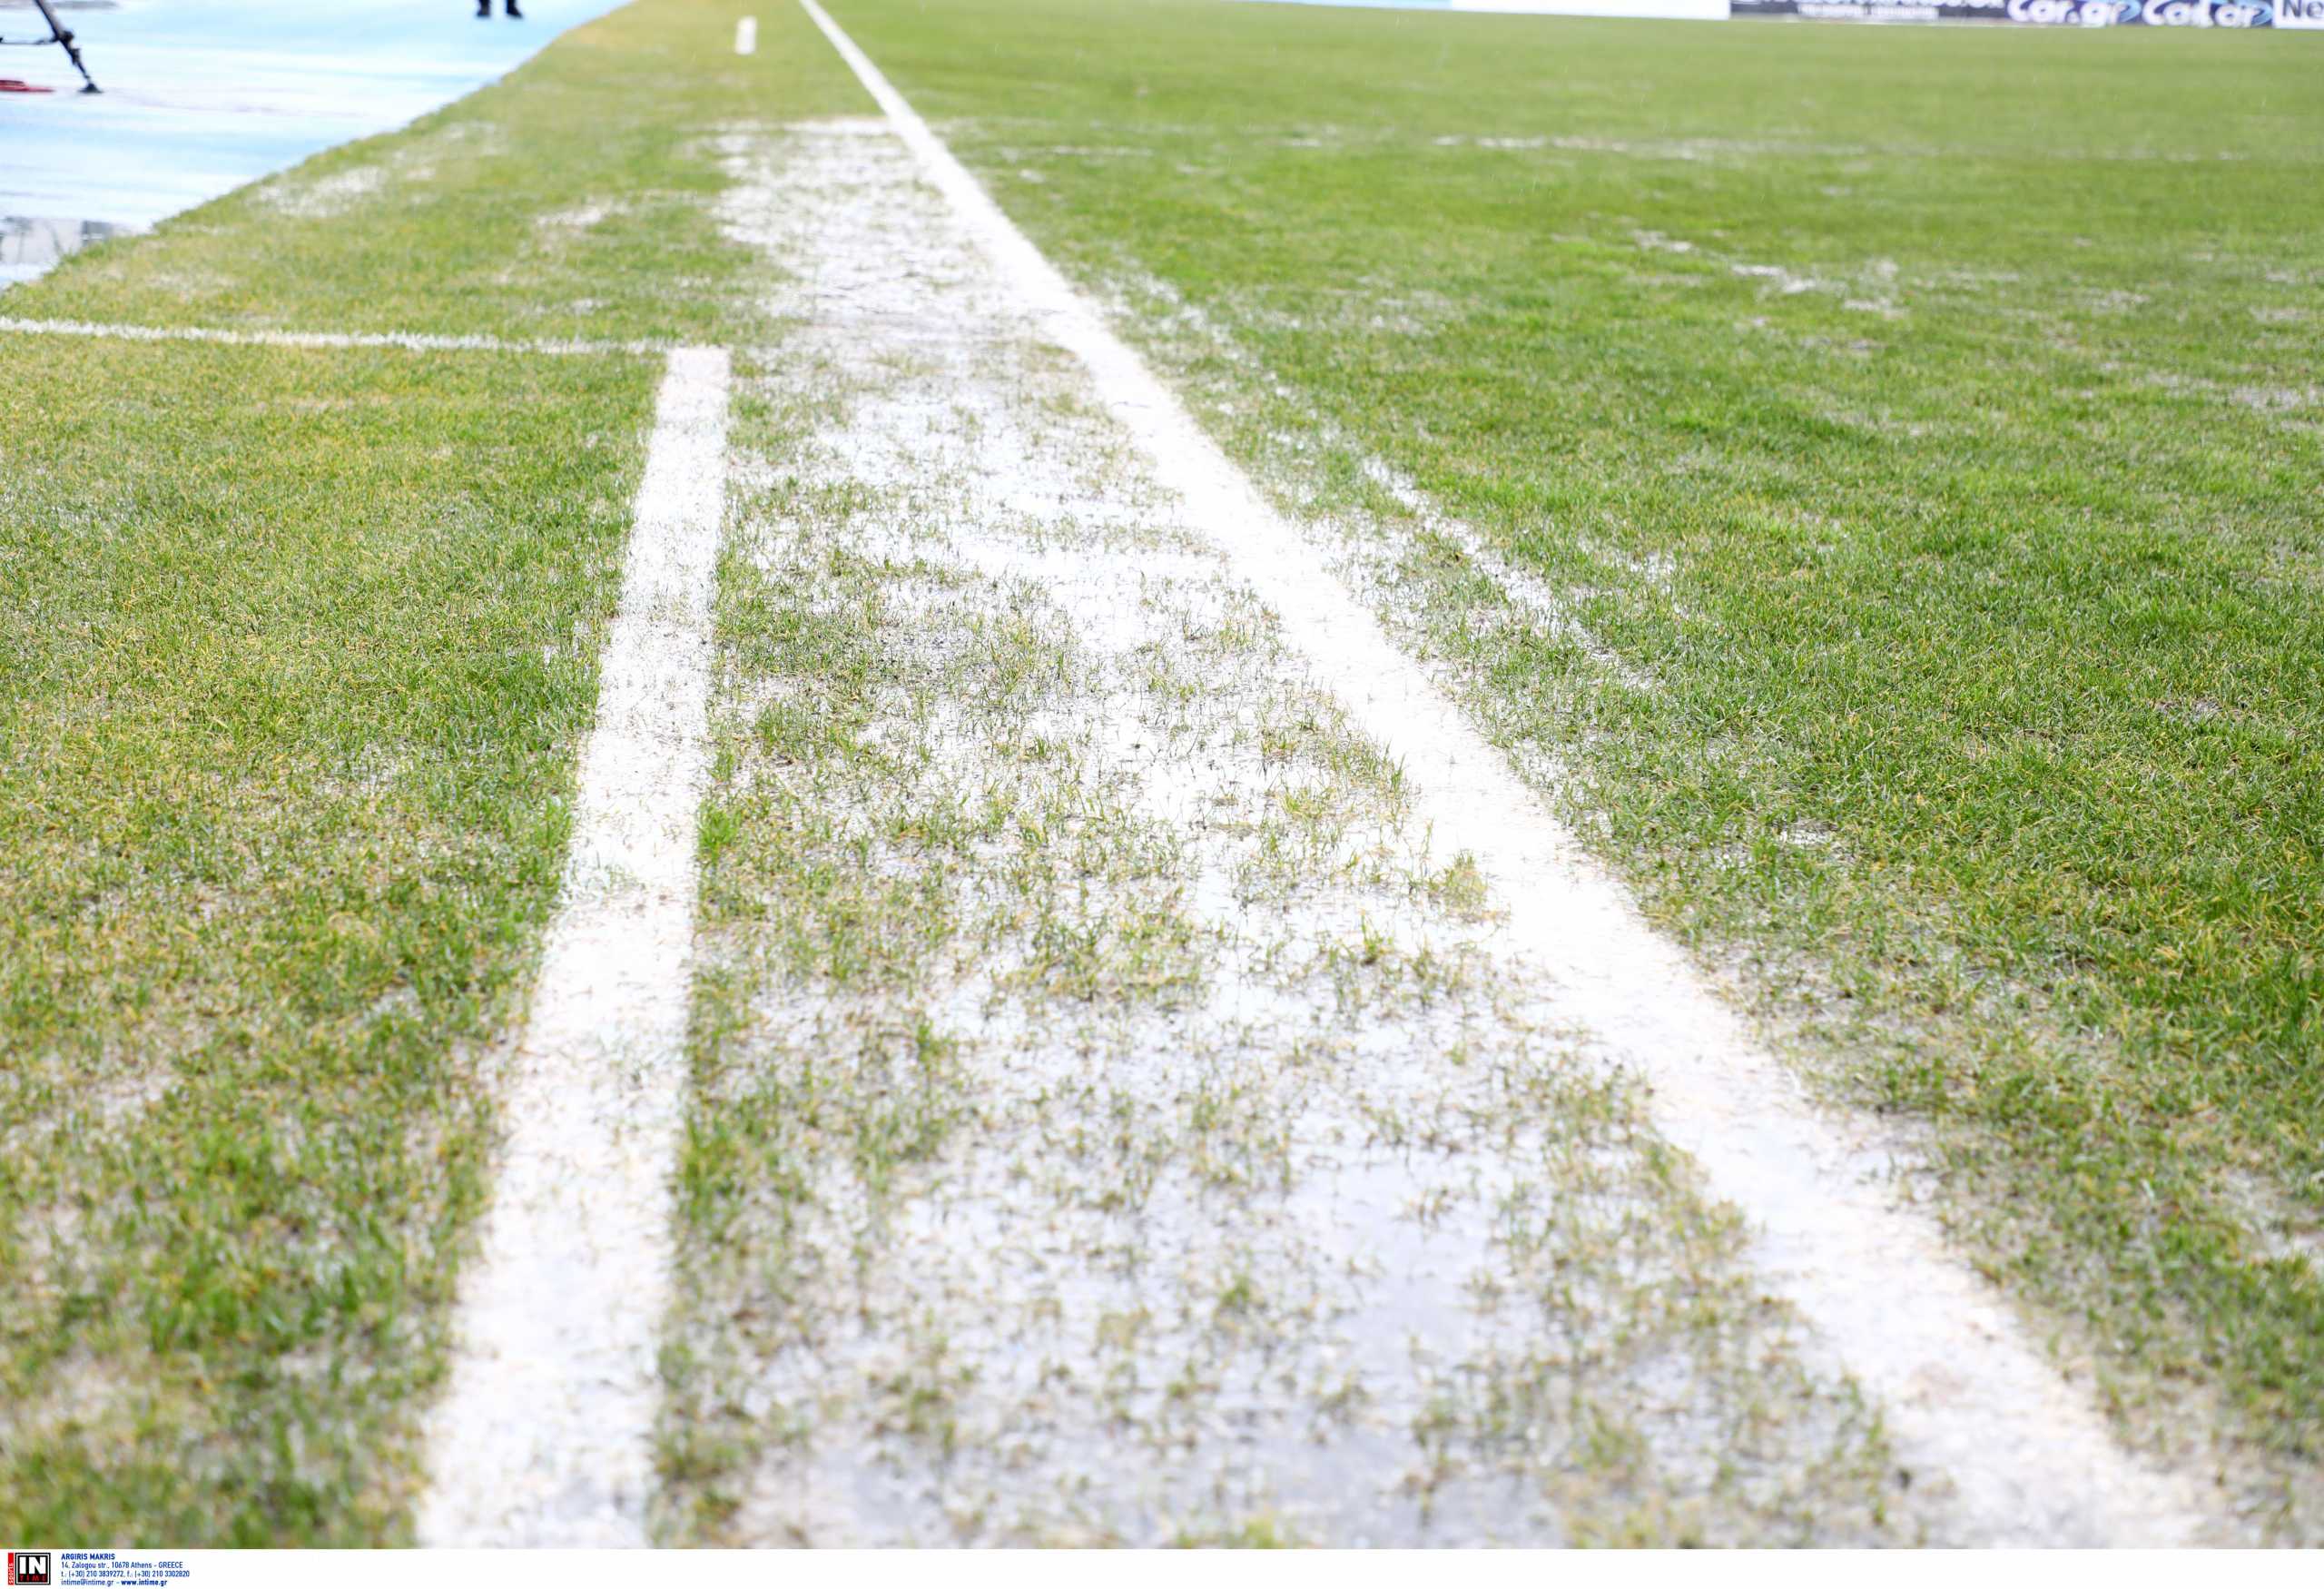 Αναβλήθηκε το ΠΑΣ Γιάννινα – Παναθηναϊκός λόγω λάσπης στο γήπεδο